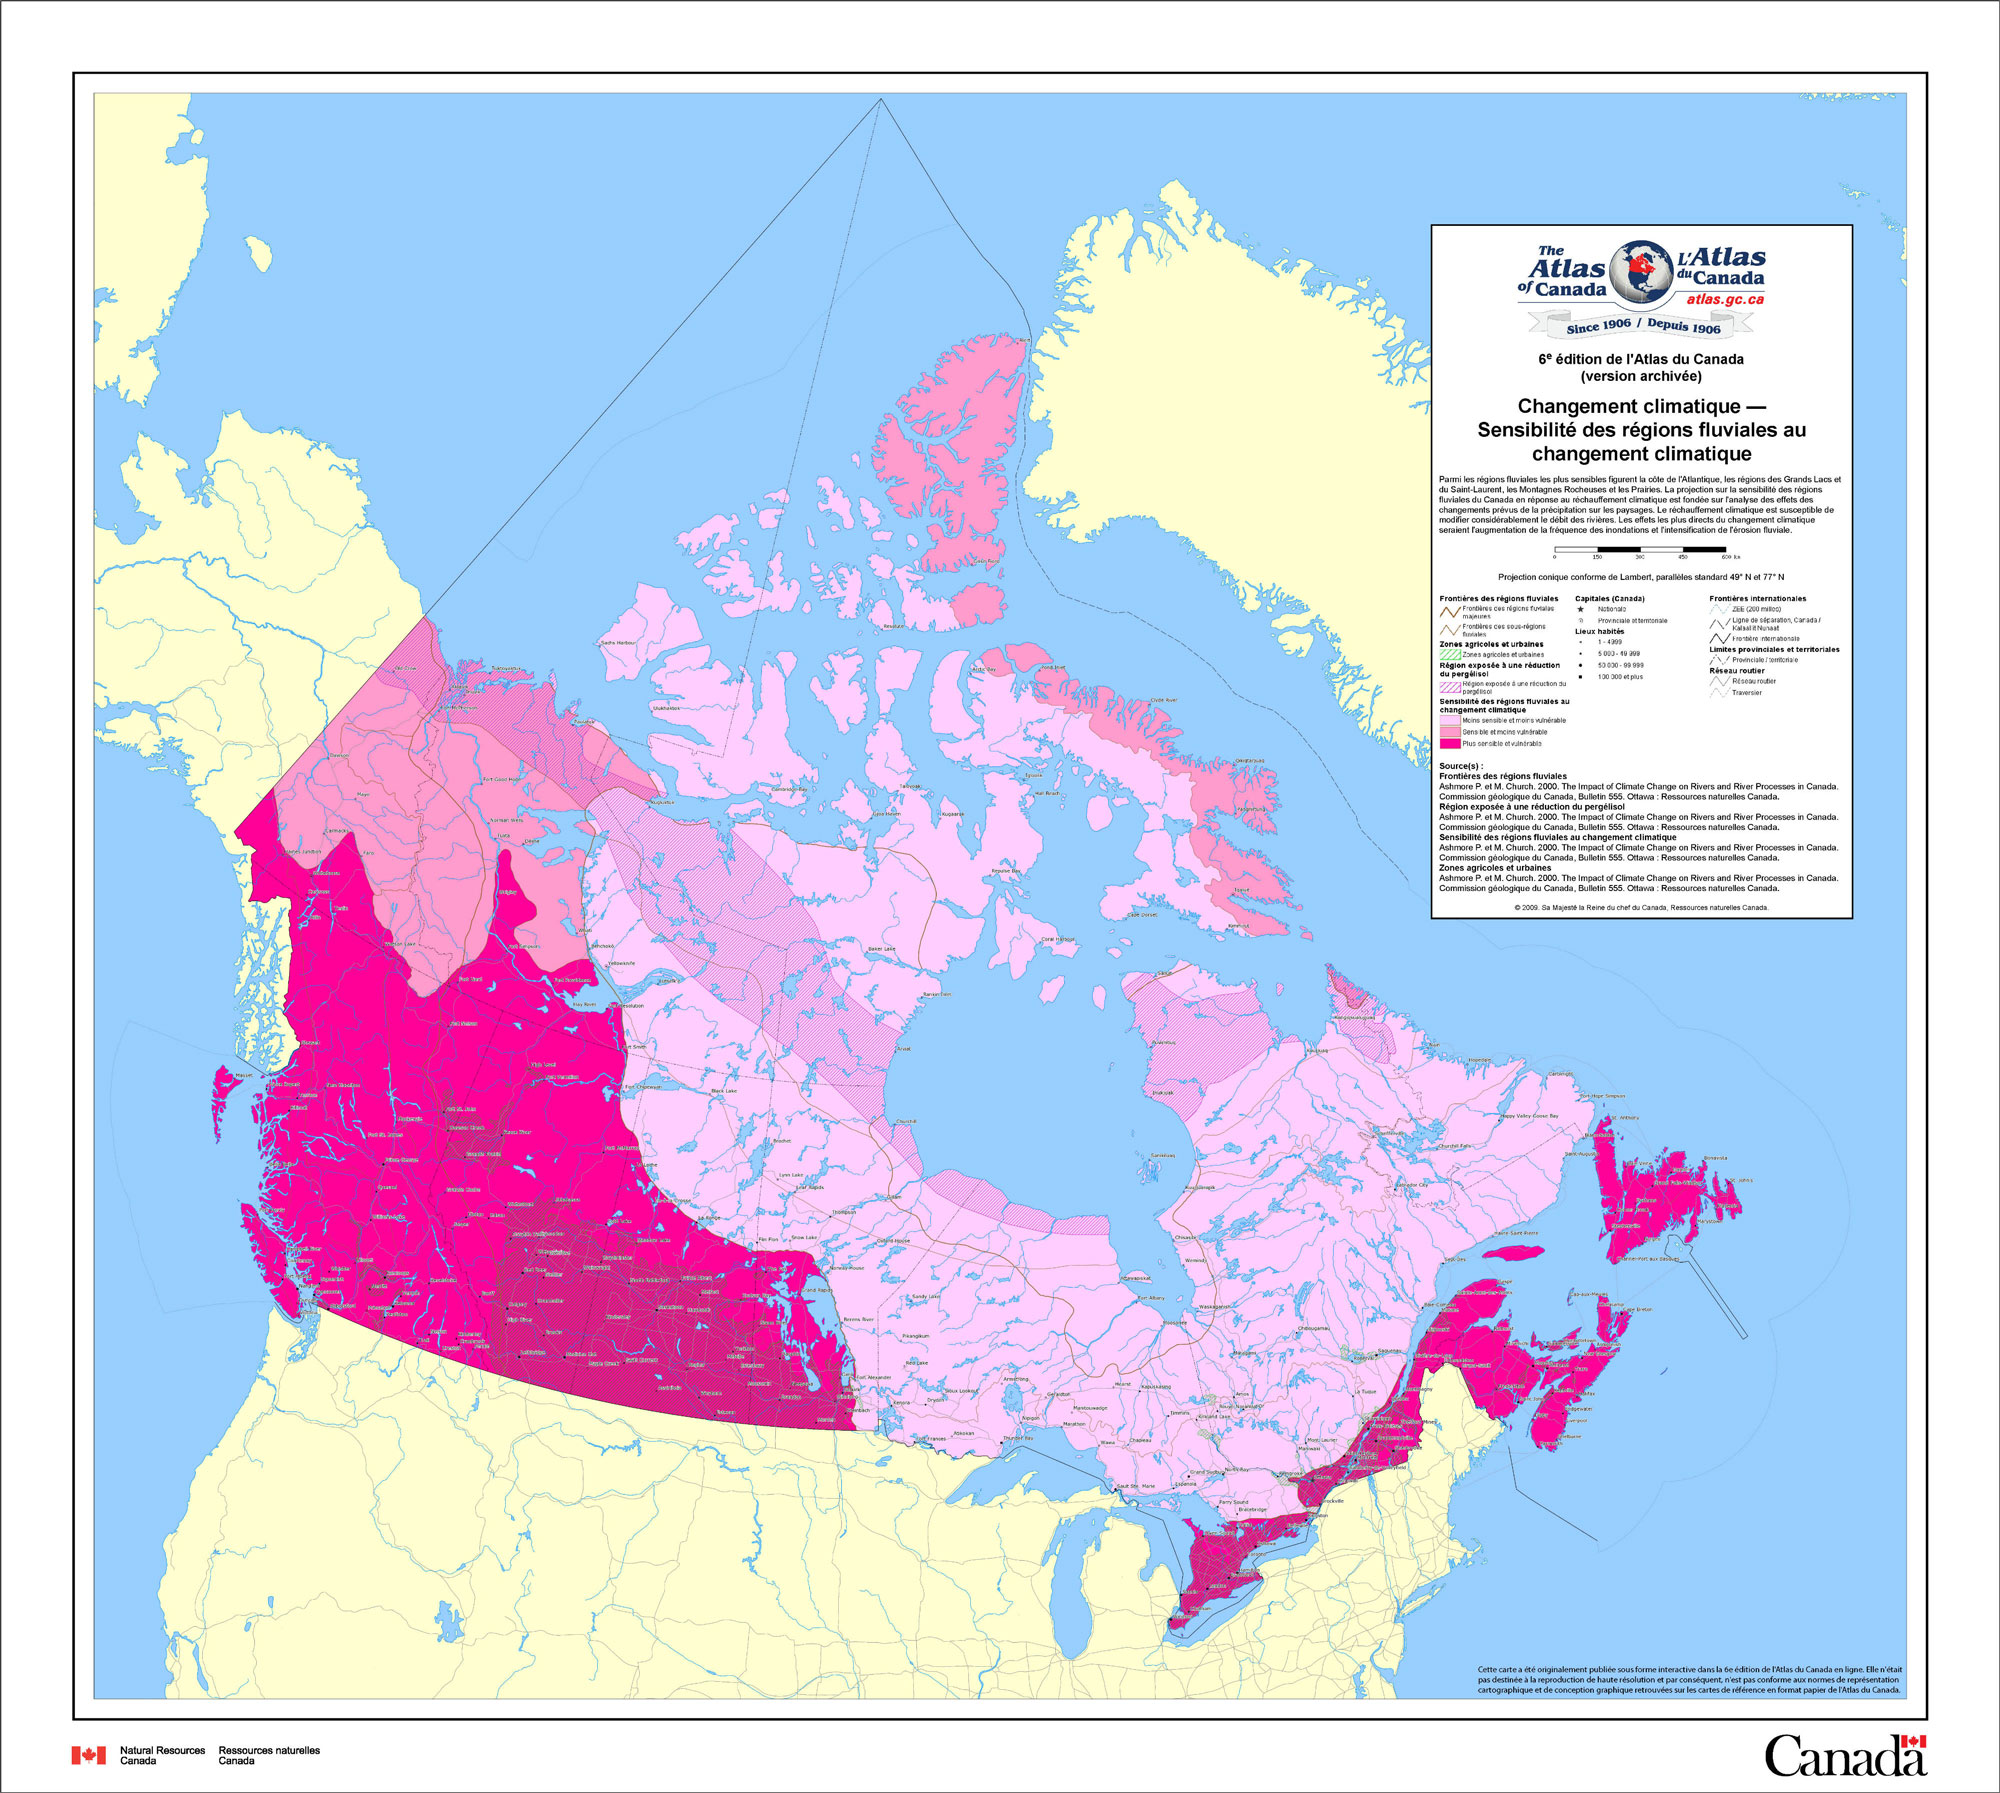 Carte géologique du Canada représentant l'impact des changements climatiques sur les régions fluviales